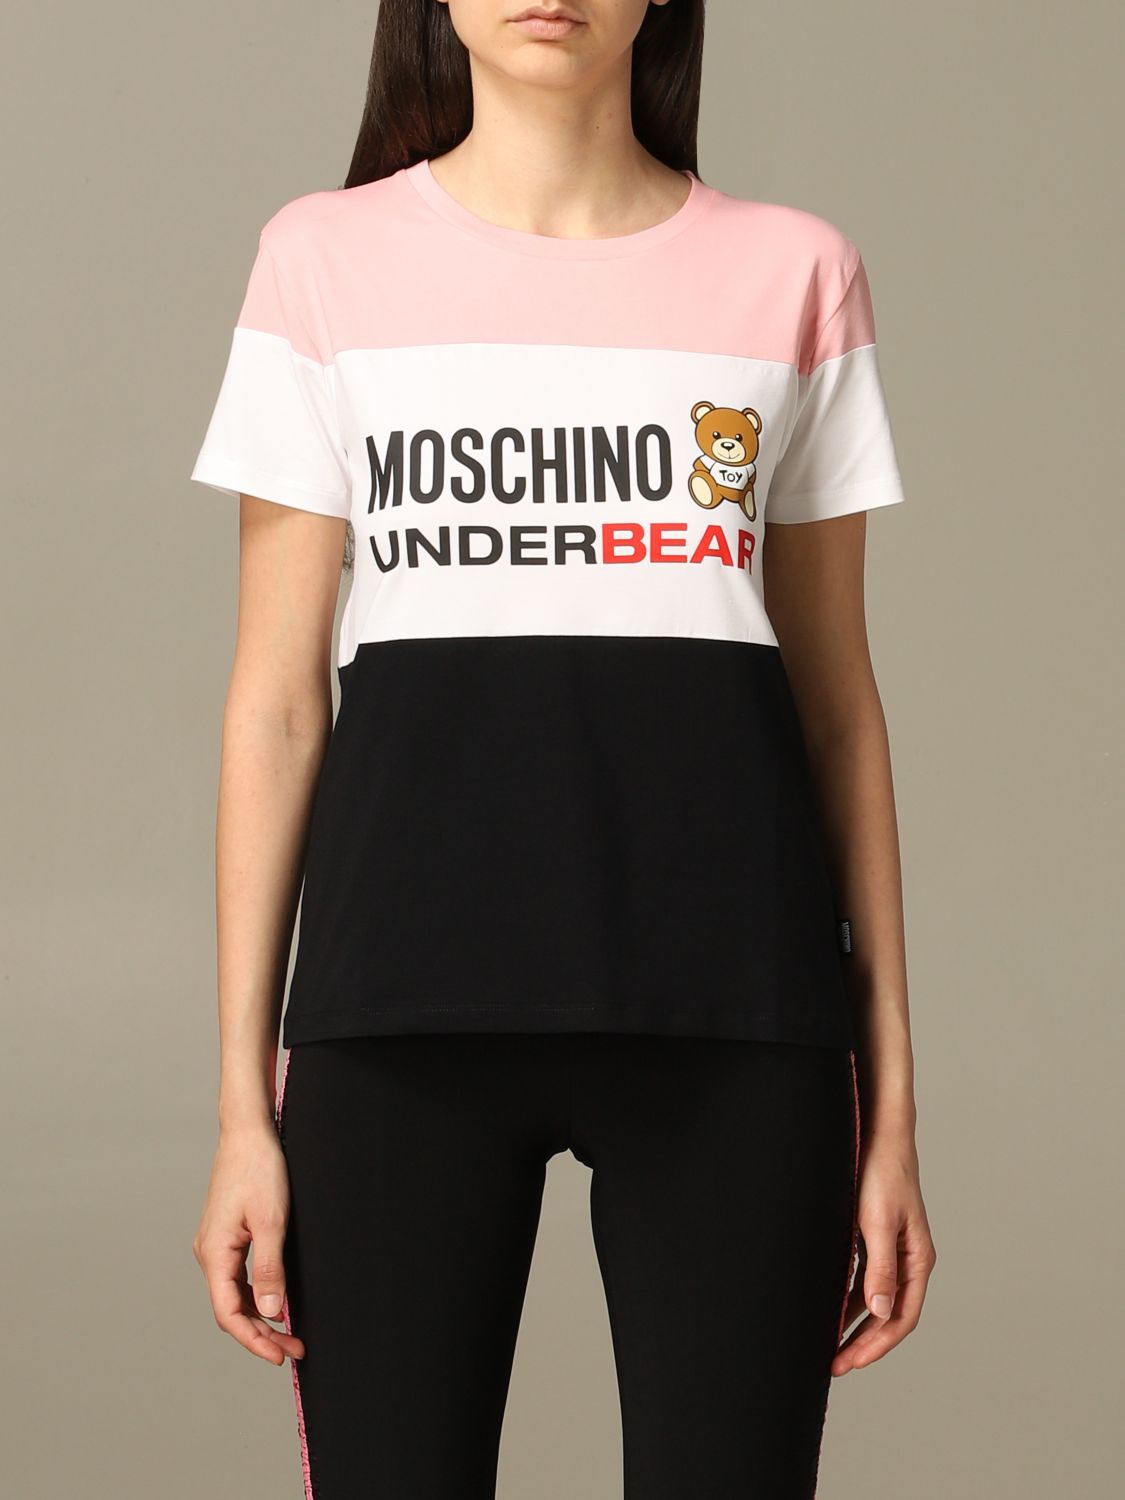 moschino underwear shirt